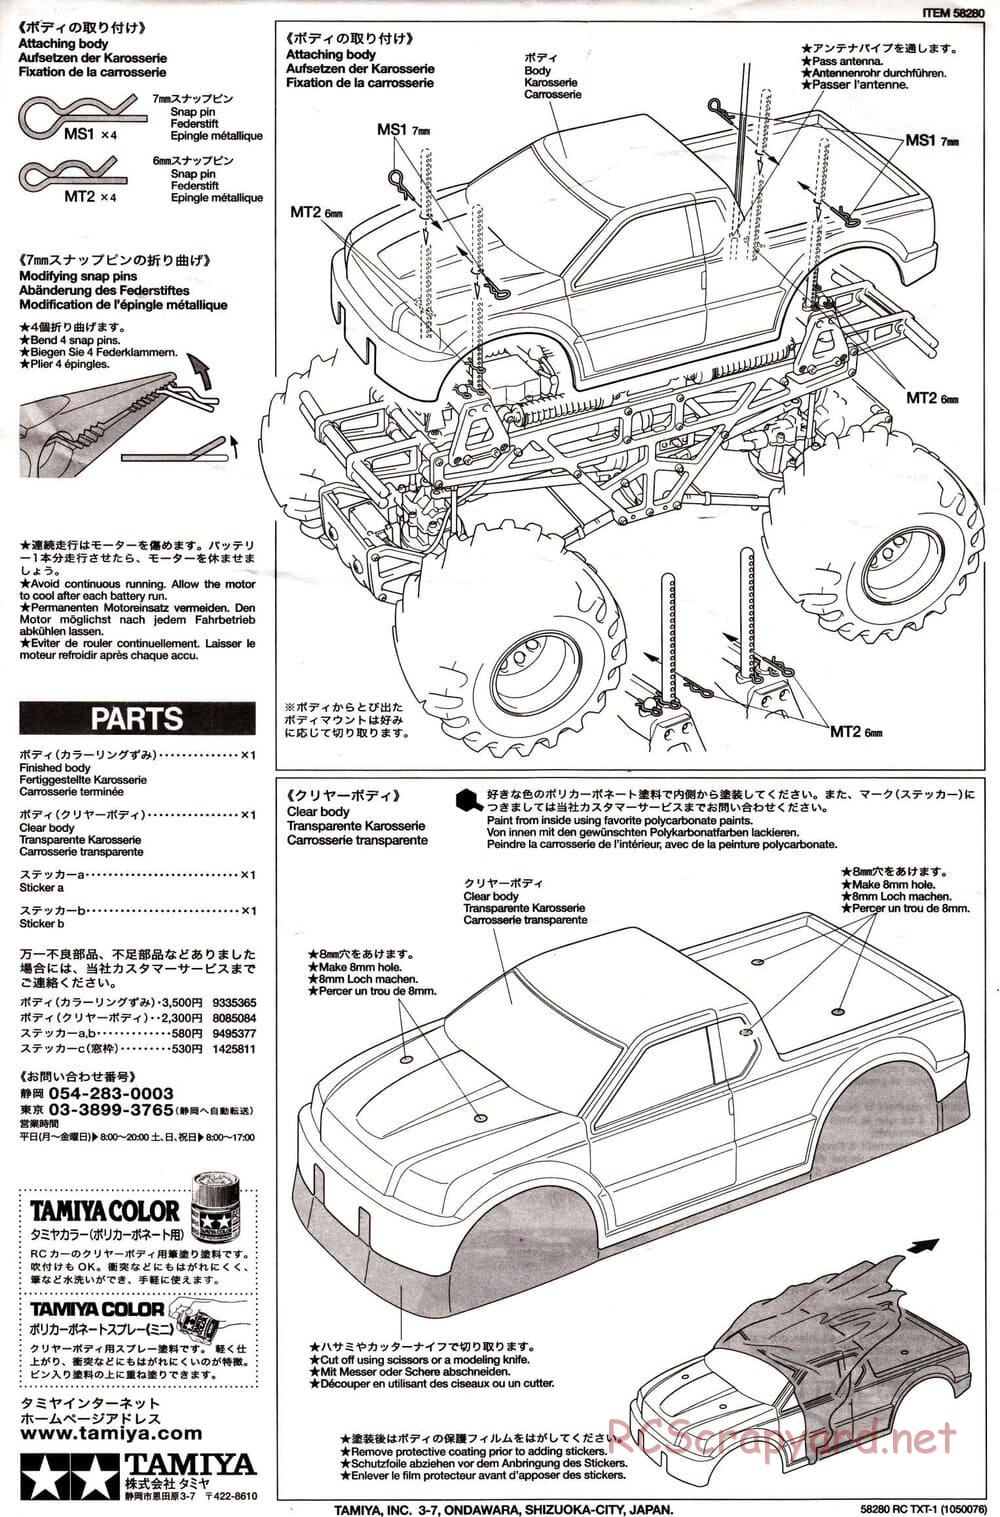 Tamiya - TXT-1 (Tamiya Xtreme Truck) Chassis - Manual - Page 30